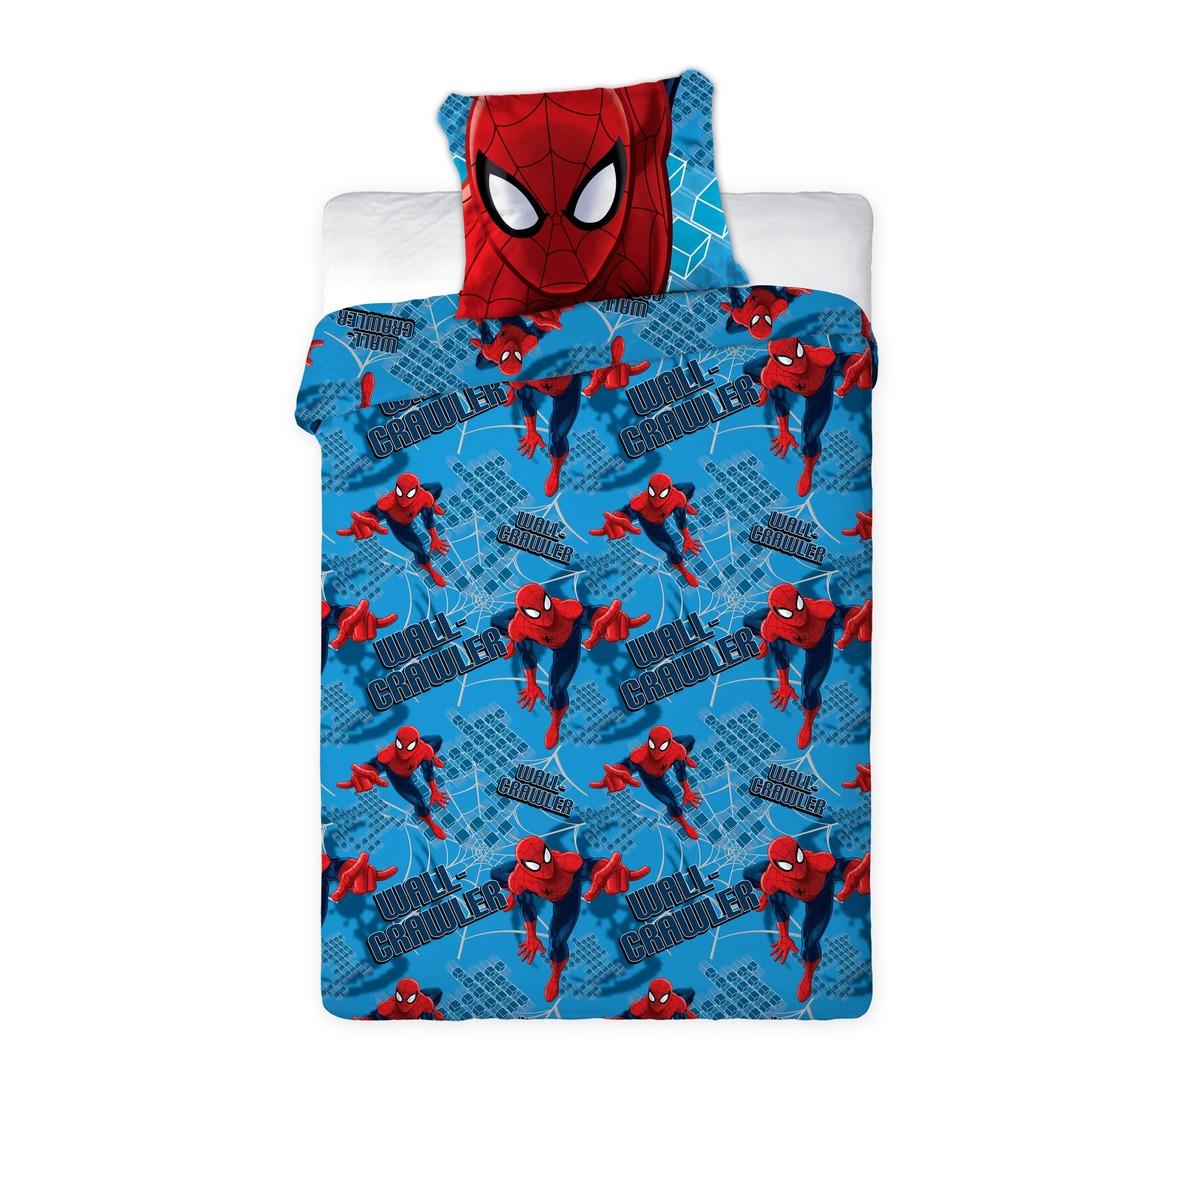 Parure de couette Spider-man - 140 x 200 cm + 1 taie d'oreiller - Rouge. Bleu